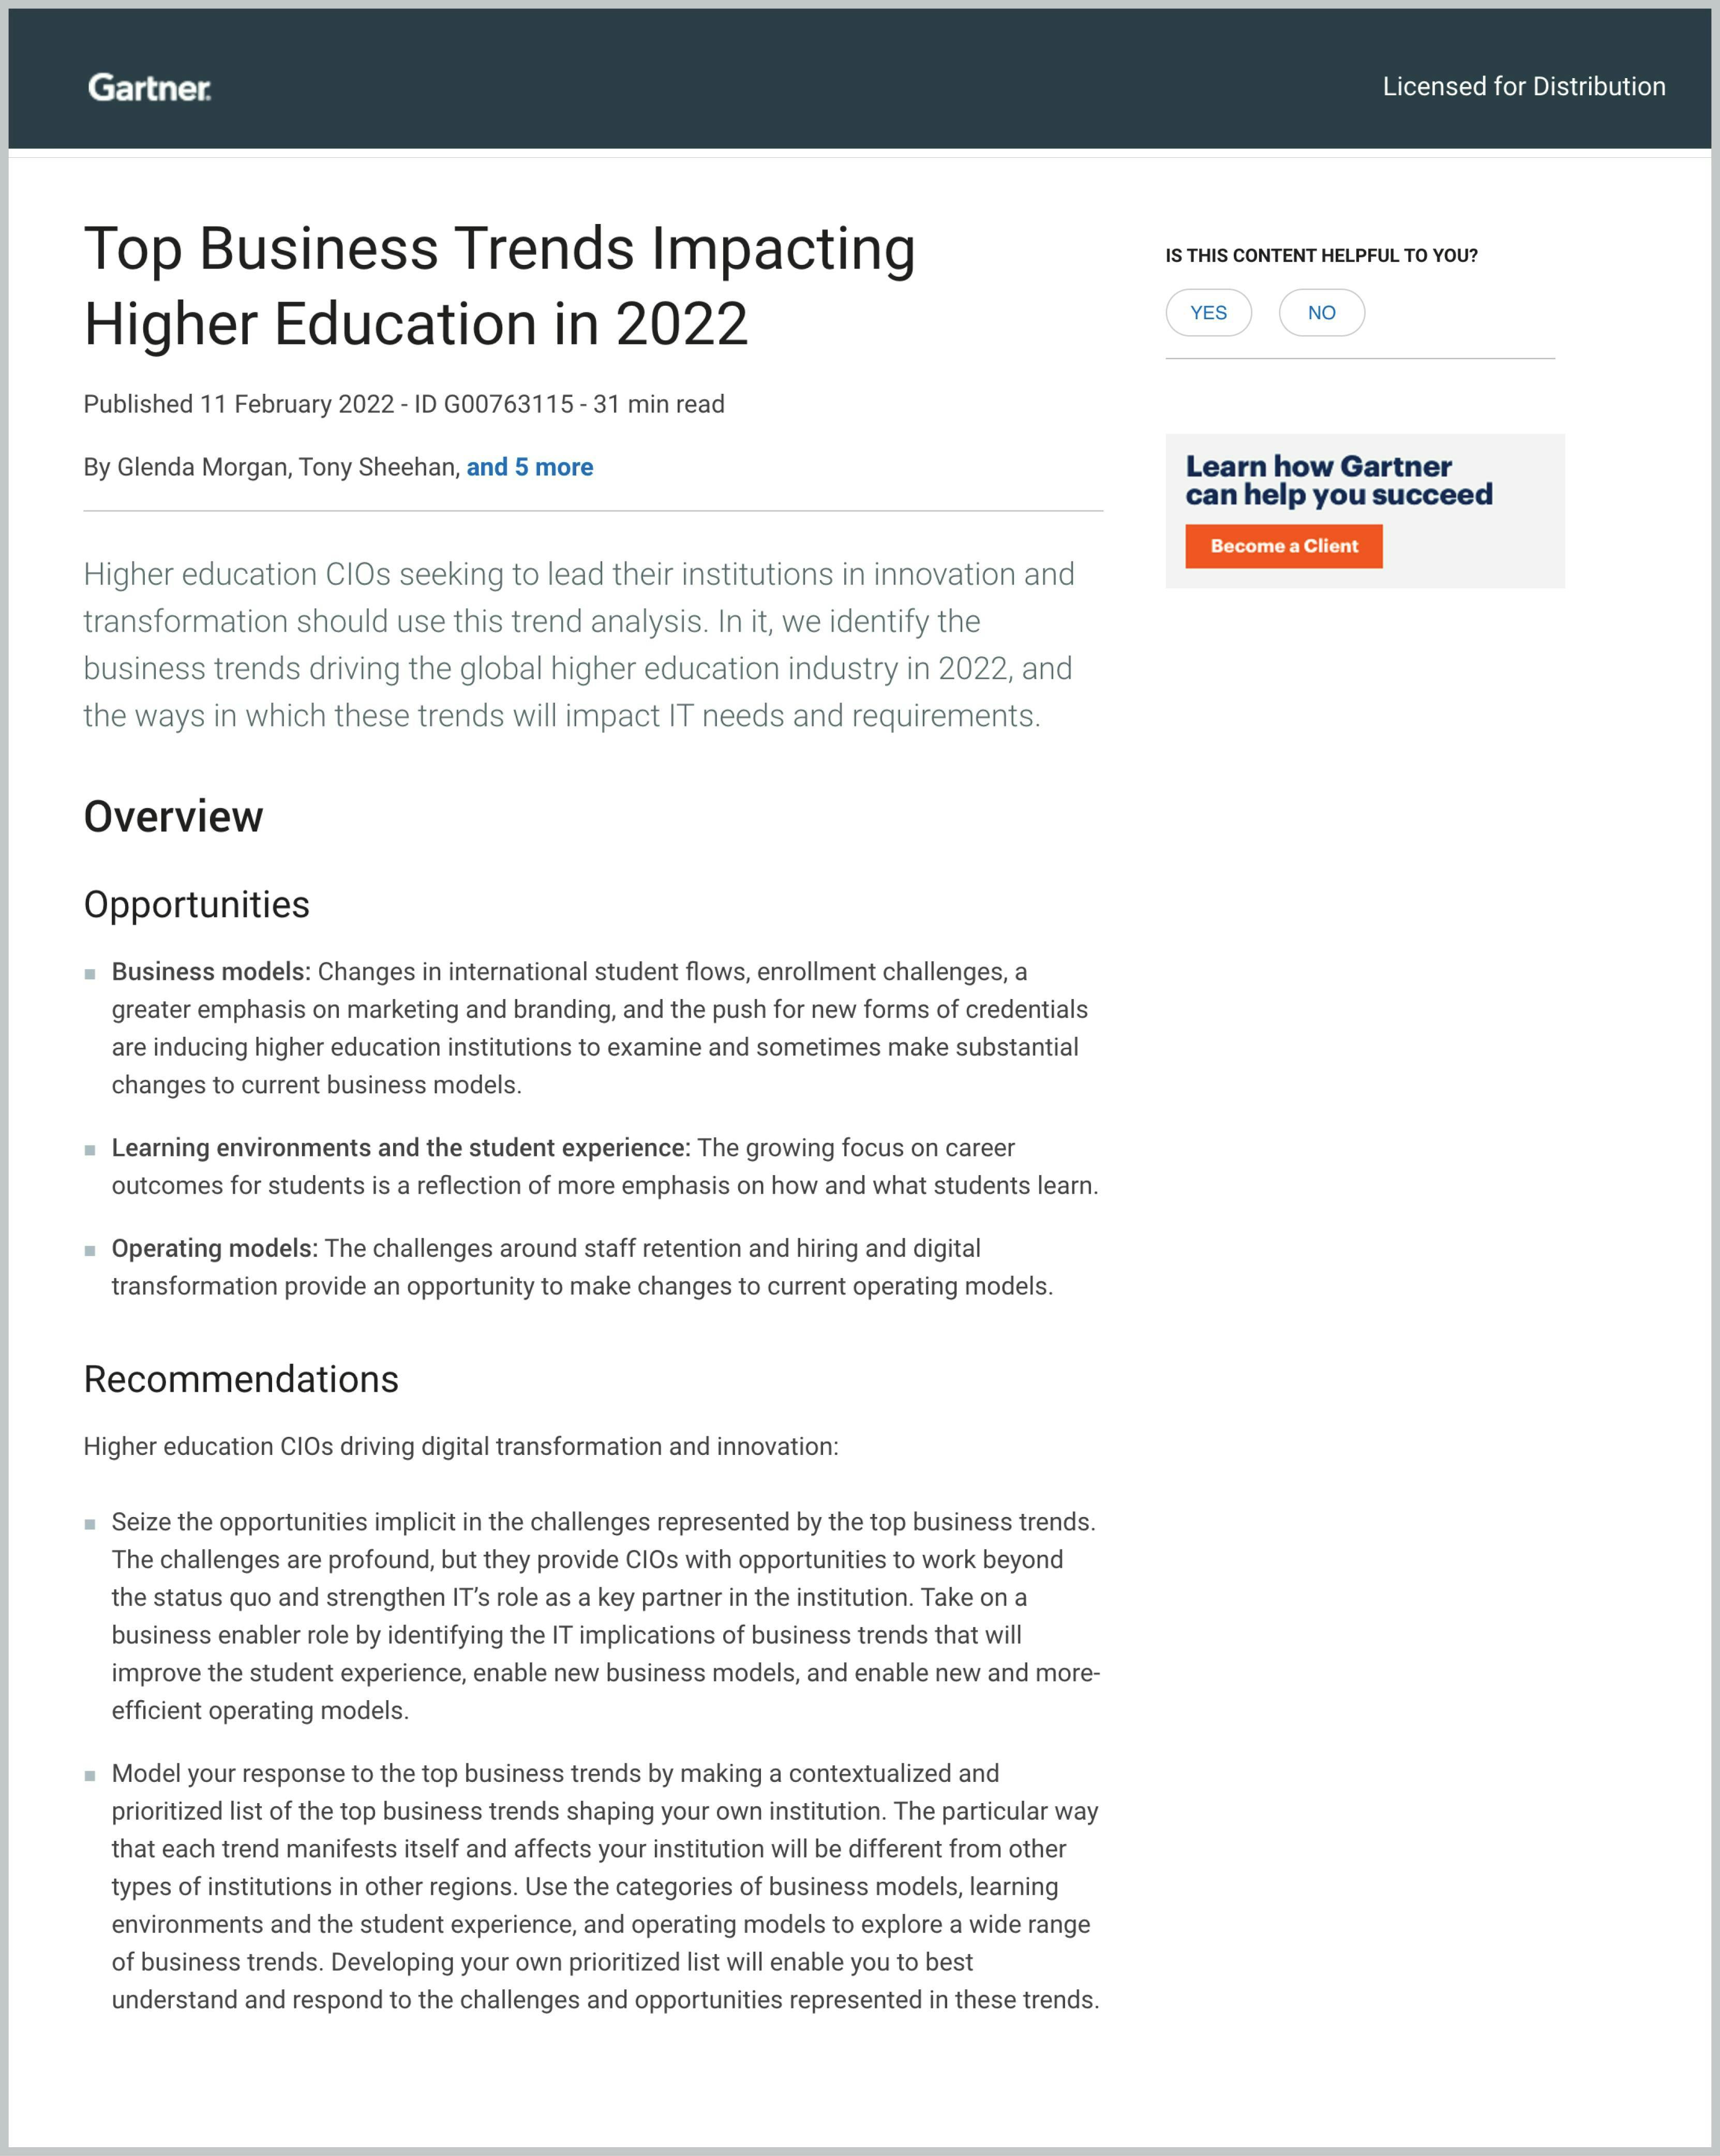 Gartner Report: Top Business Trends Impacting Higher Education in 2022